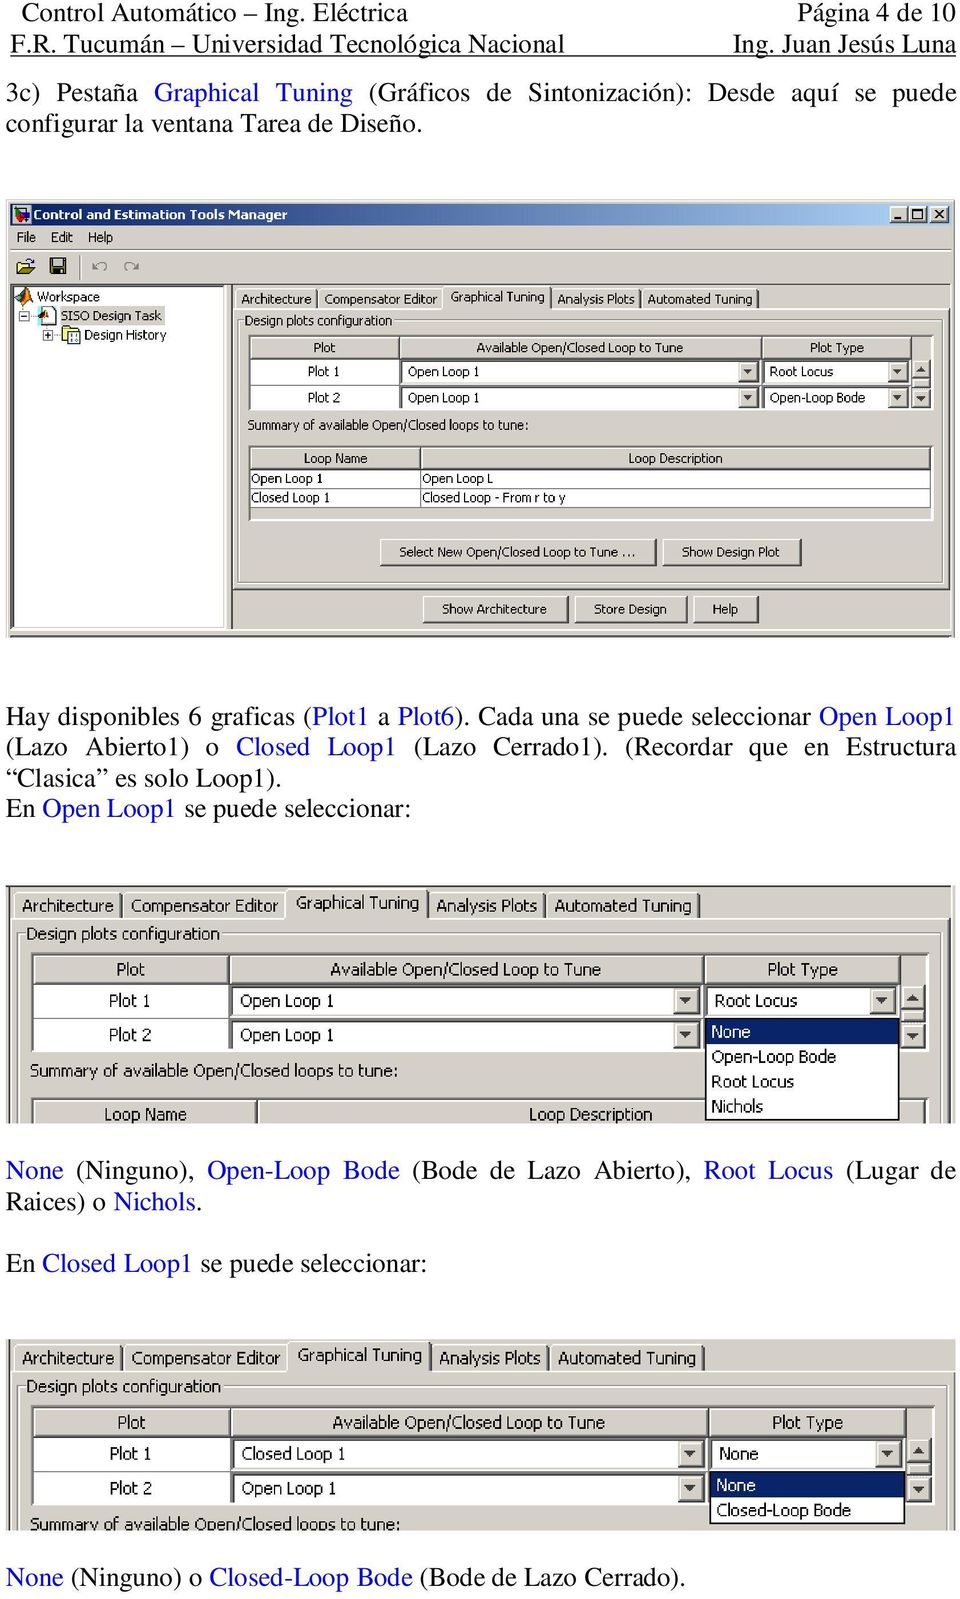 Hay disponibles 6 graficas (Plot1 a Plot6). Cada una se puede seleccionar Open Loop1 (Lazo Abierto1) o Closed Loop1 (Lazo Cerrado1).